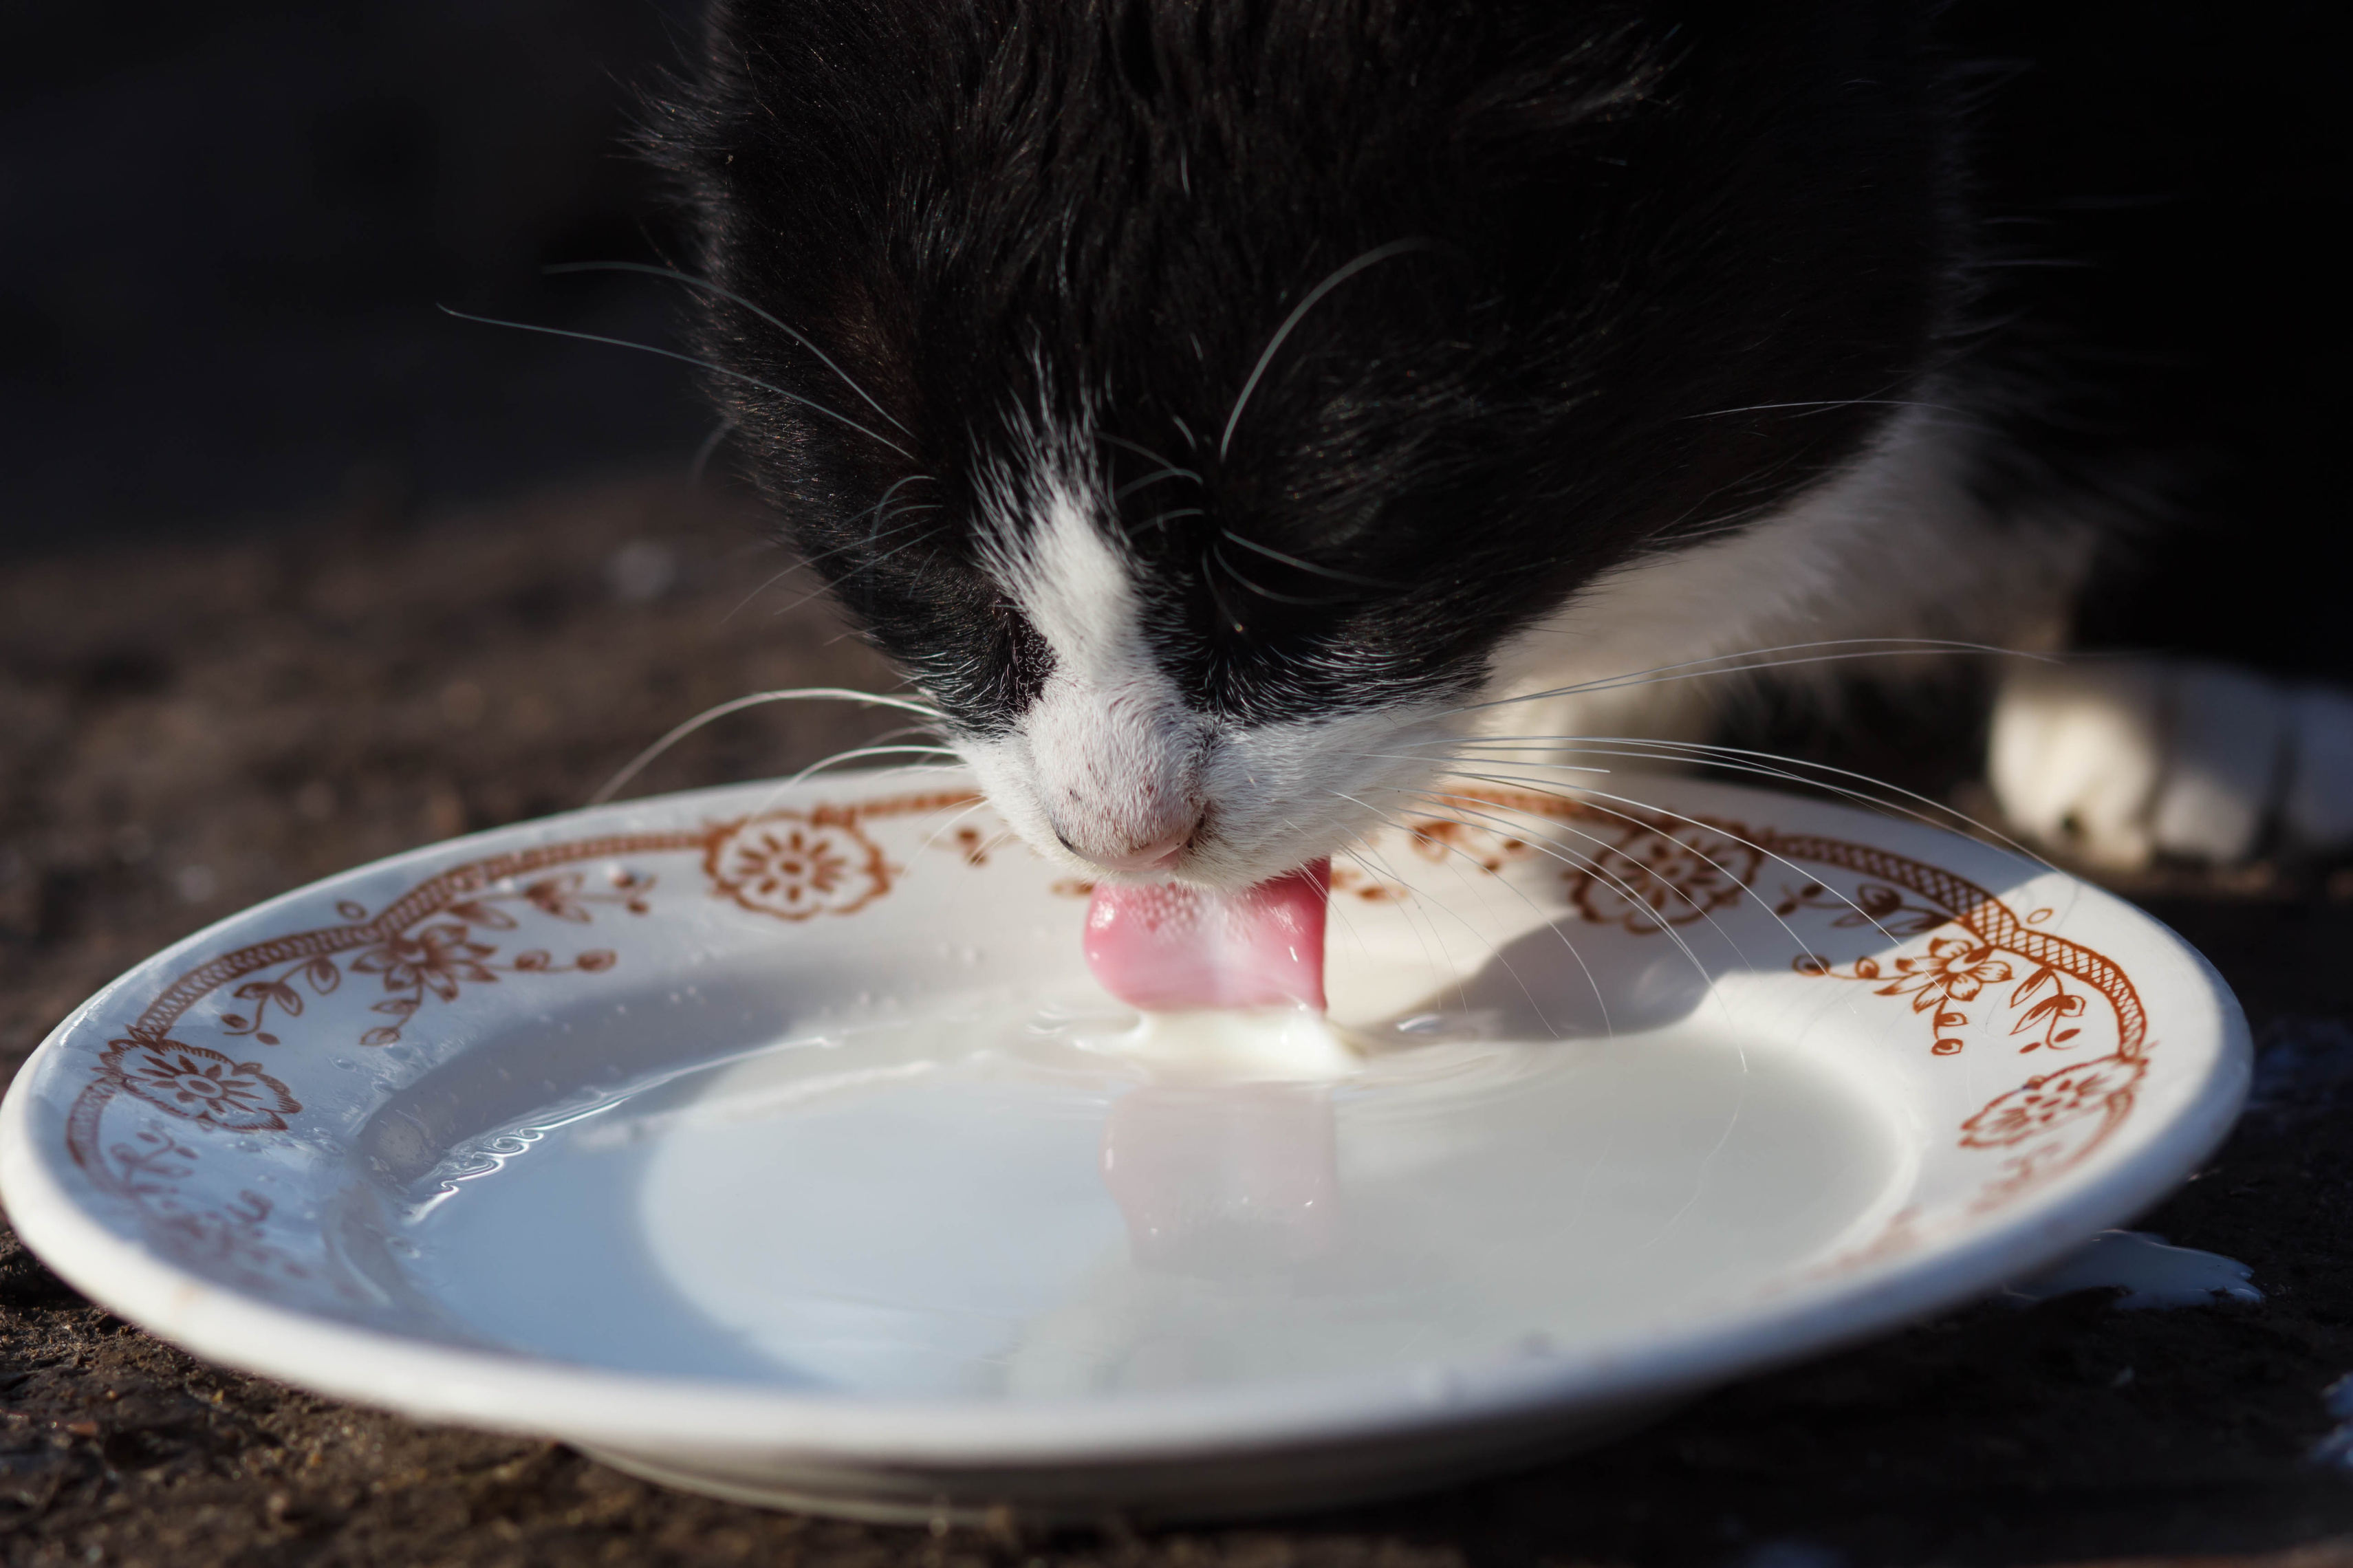 Los gatos pueden beber leche? | Los peligros la leche de vaca ⛔